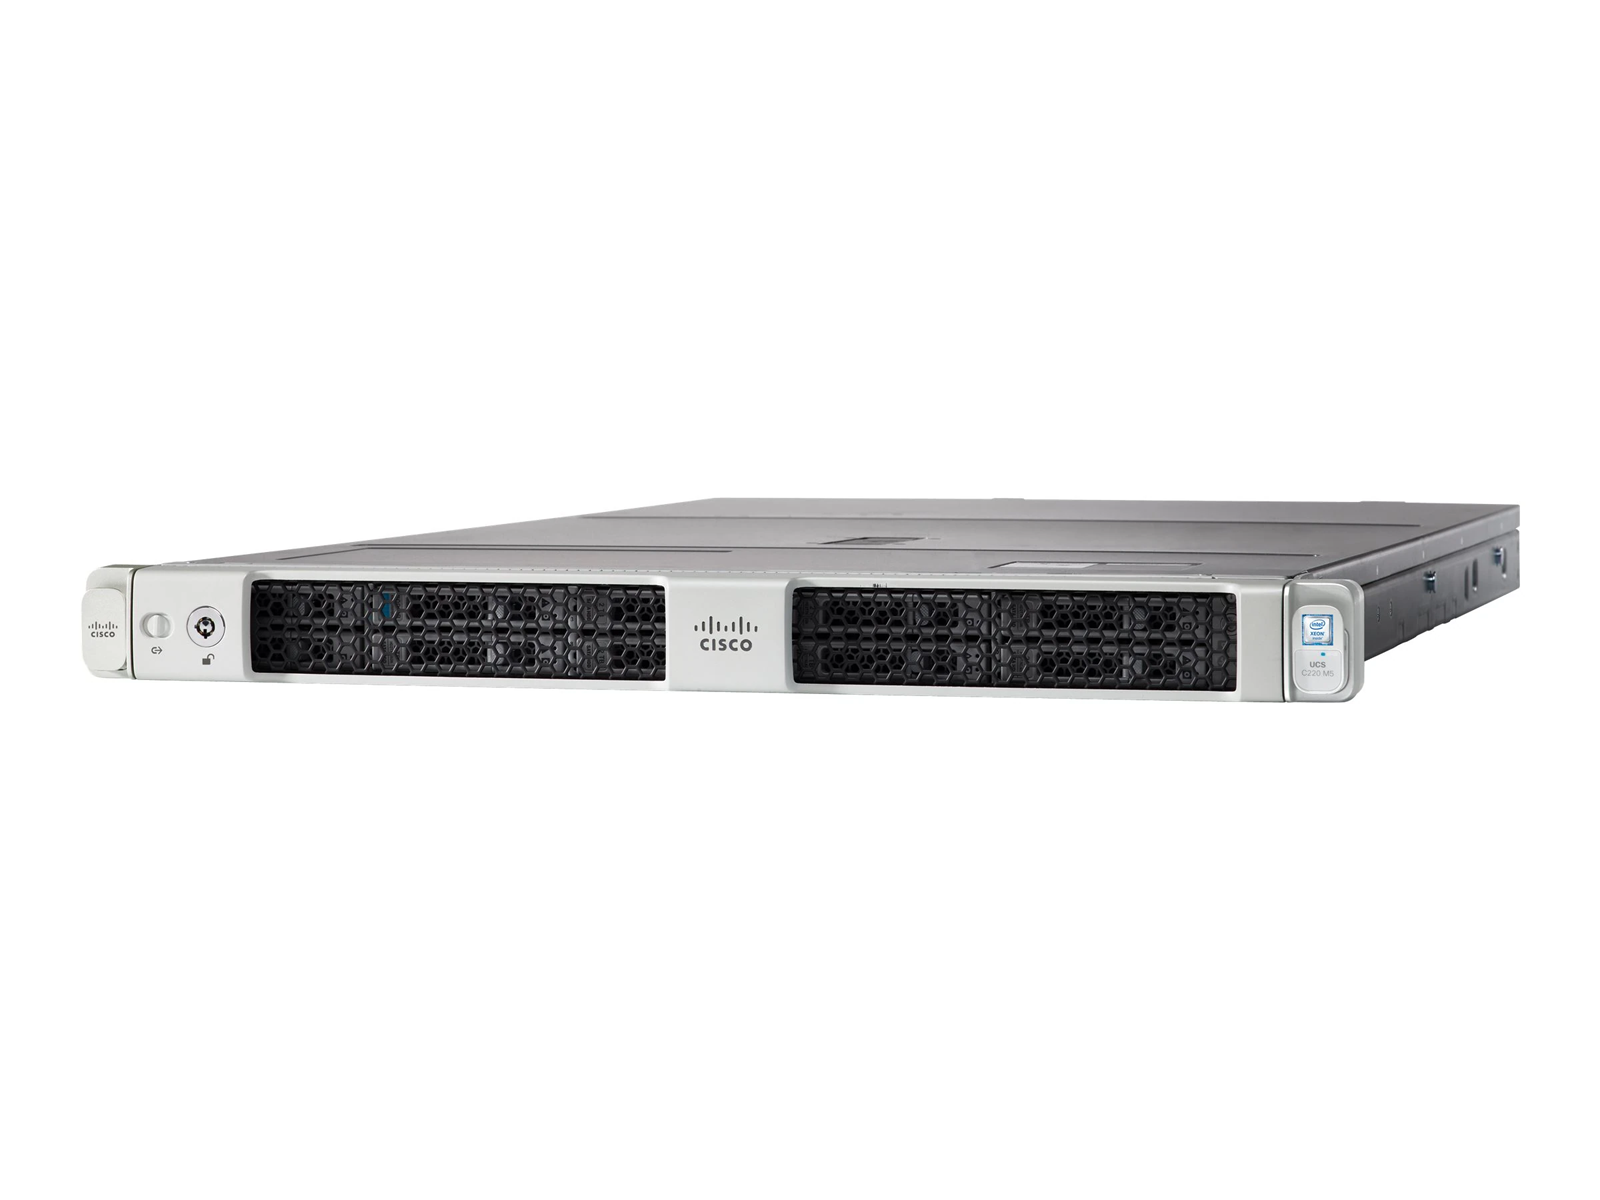 New Cisco UCS C220 M5 Server 2x 6152 44C 256GB 2x 480GB 8x 1.92TB 10Gb X710 770W